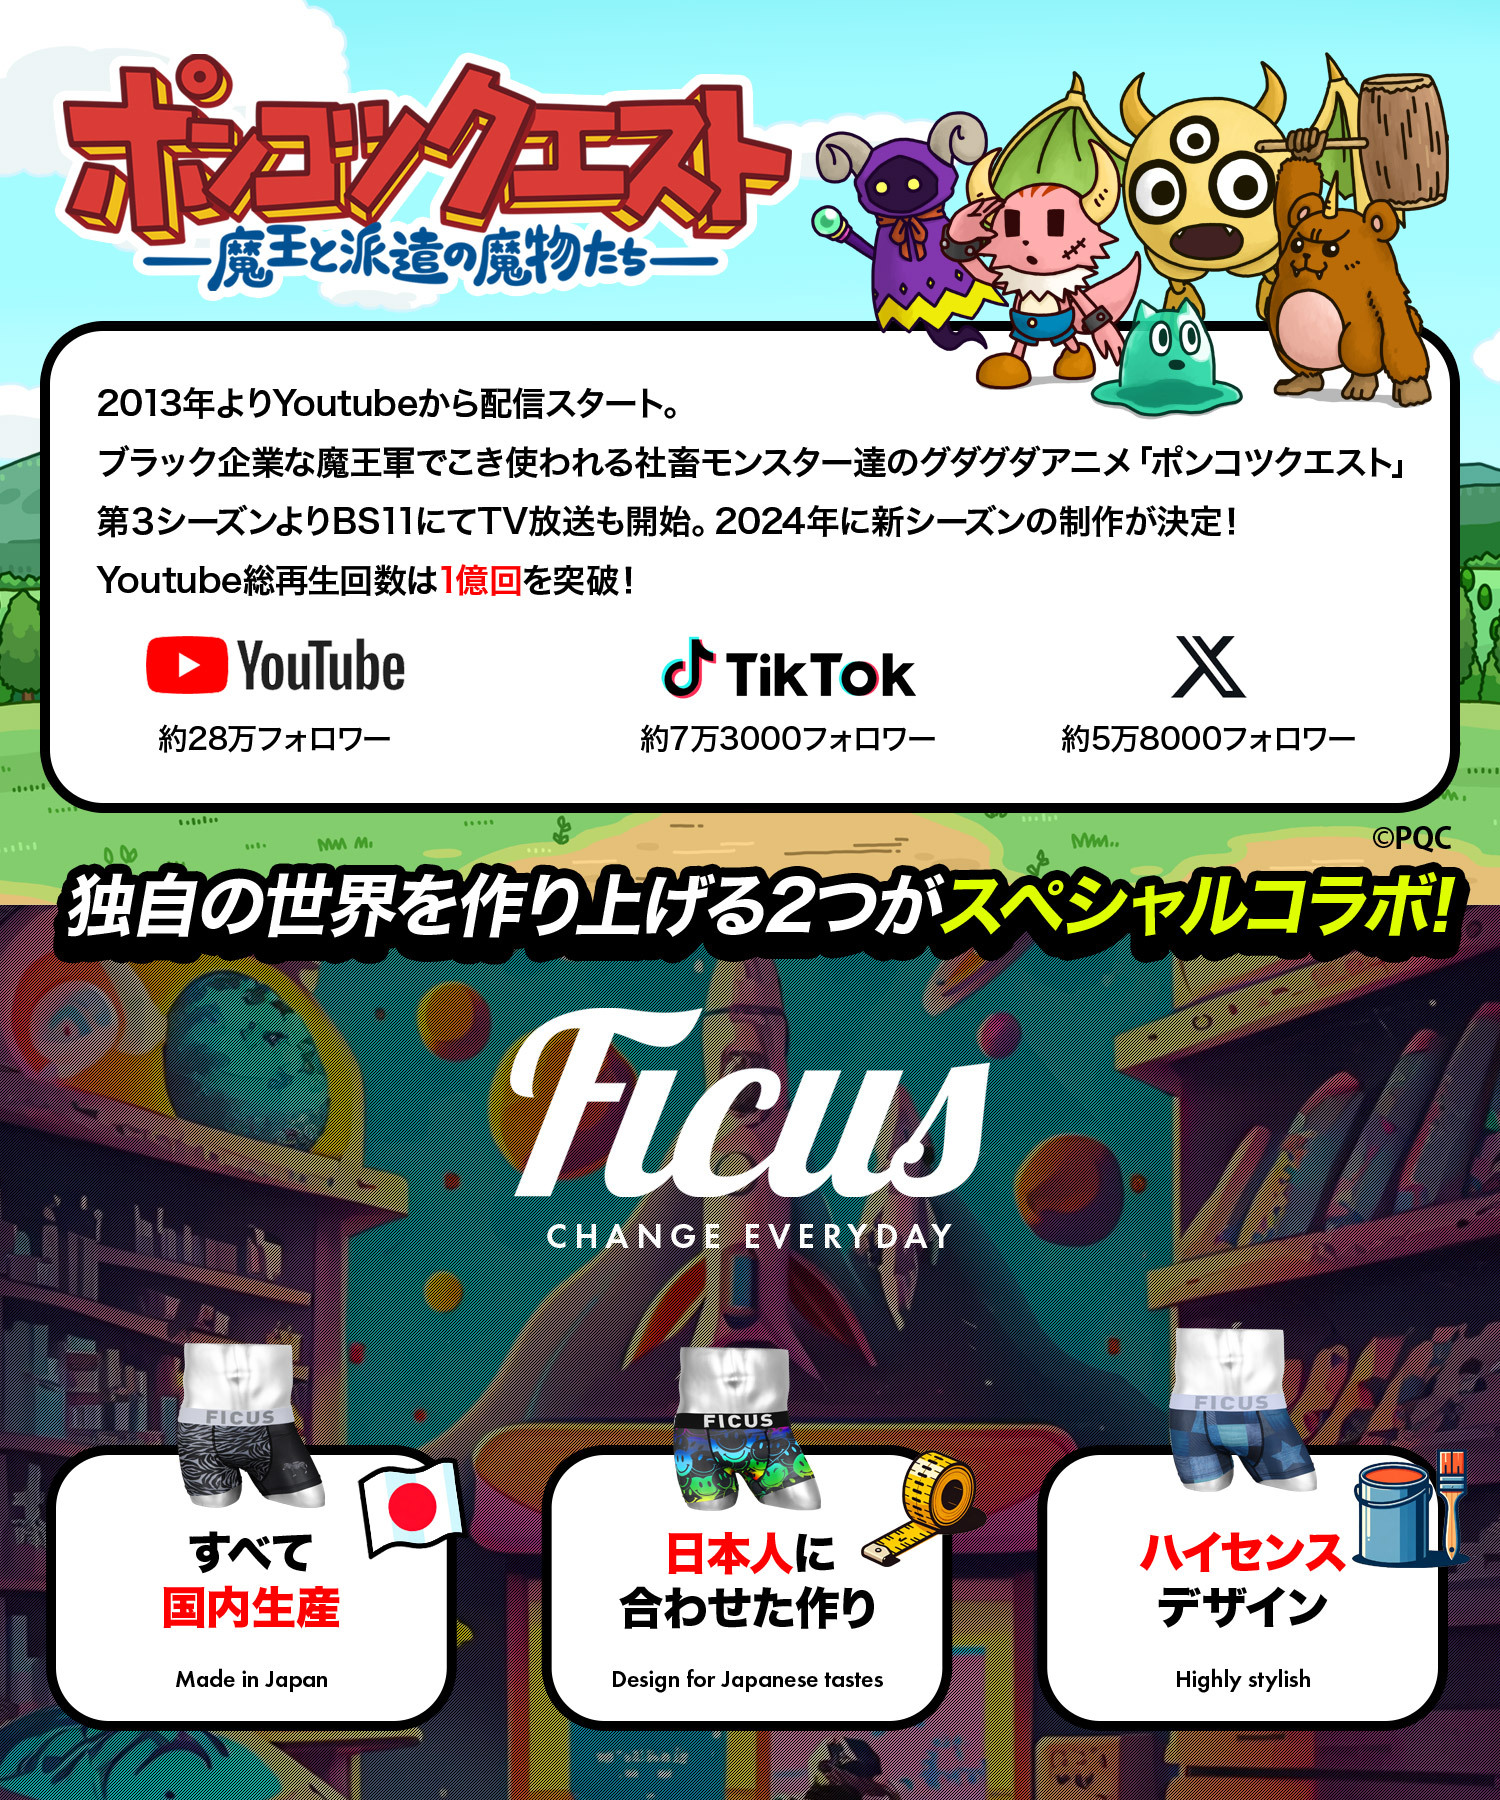 YouTube総再生数1億超えのグダグダアニメ
「ポンコツクエスト」×ボクサーパンツブランド「FICUS」　
コラボボクサーパンツを販売開始！